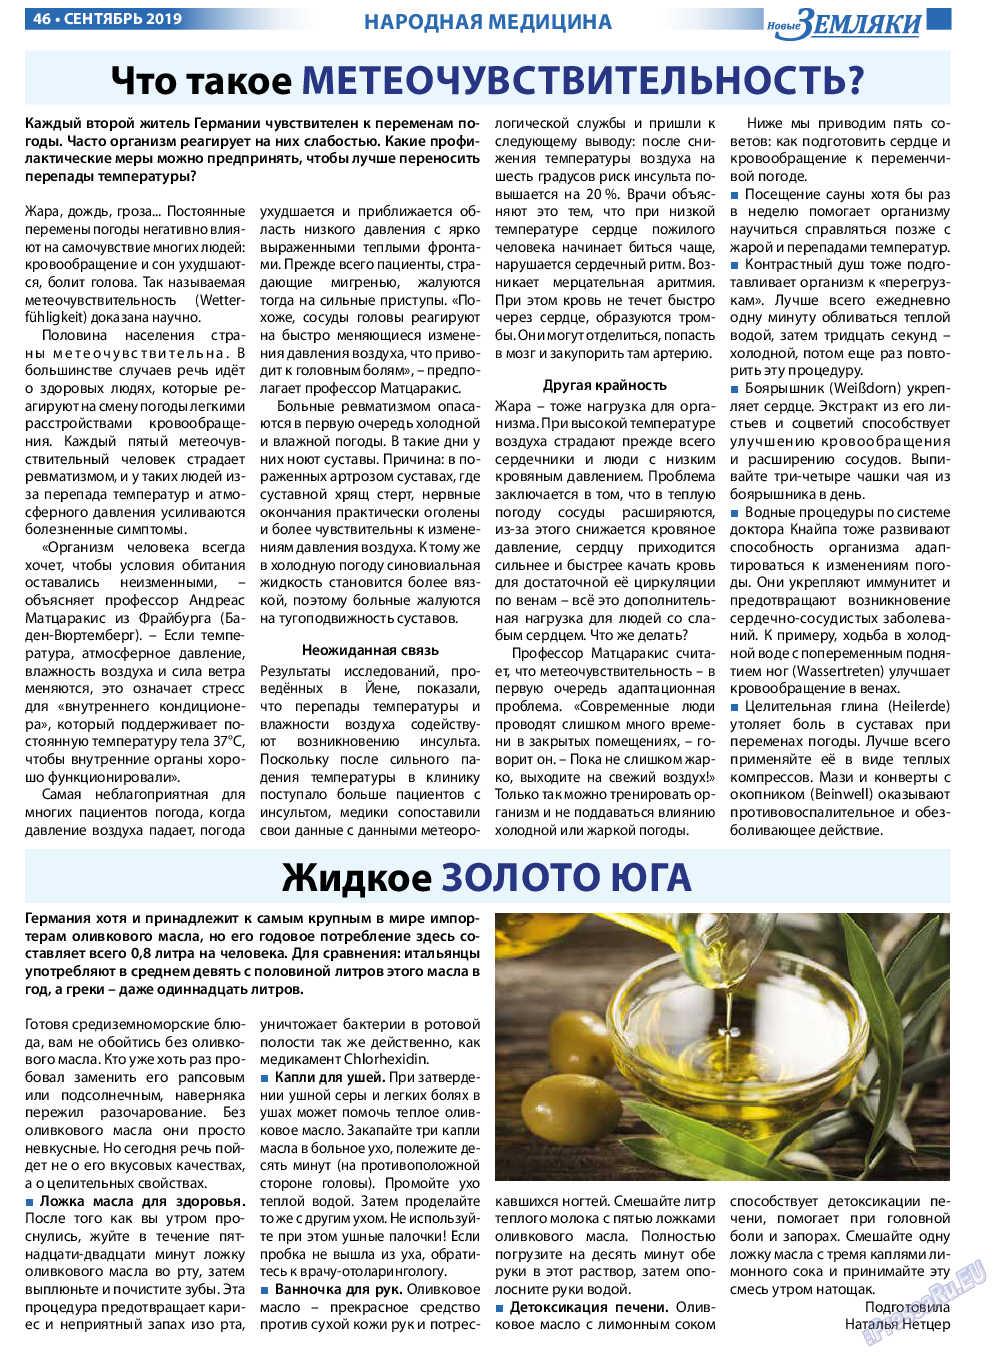 Новые Земляки, газета. 2019 №9 стр.46